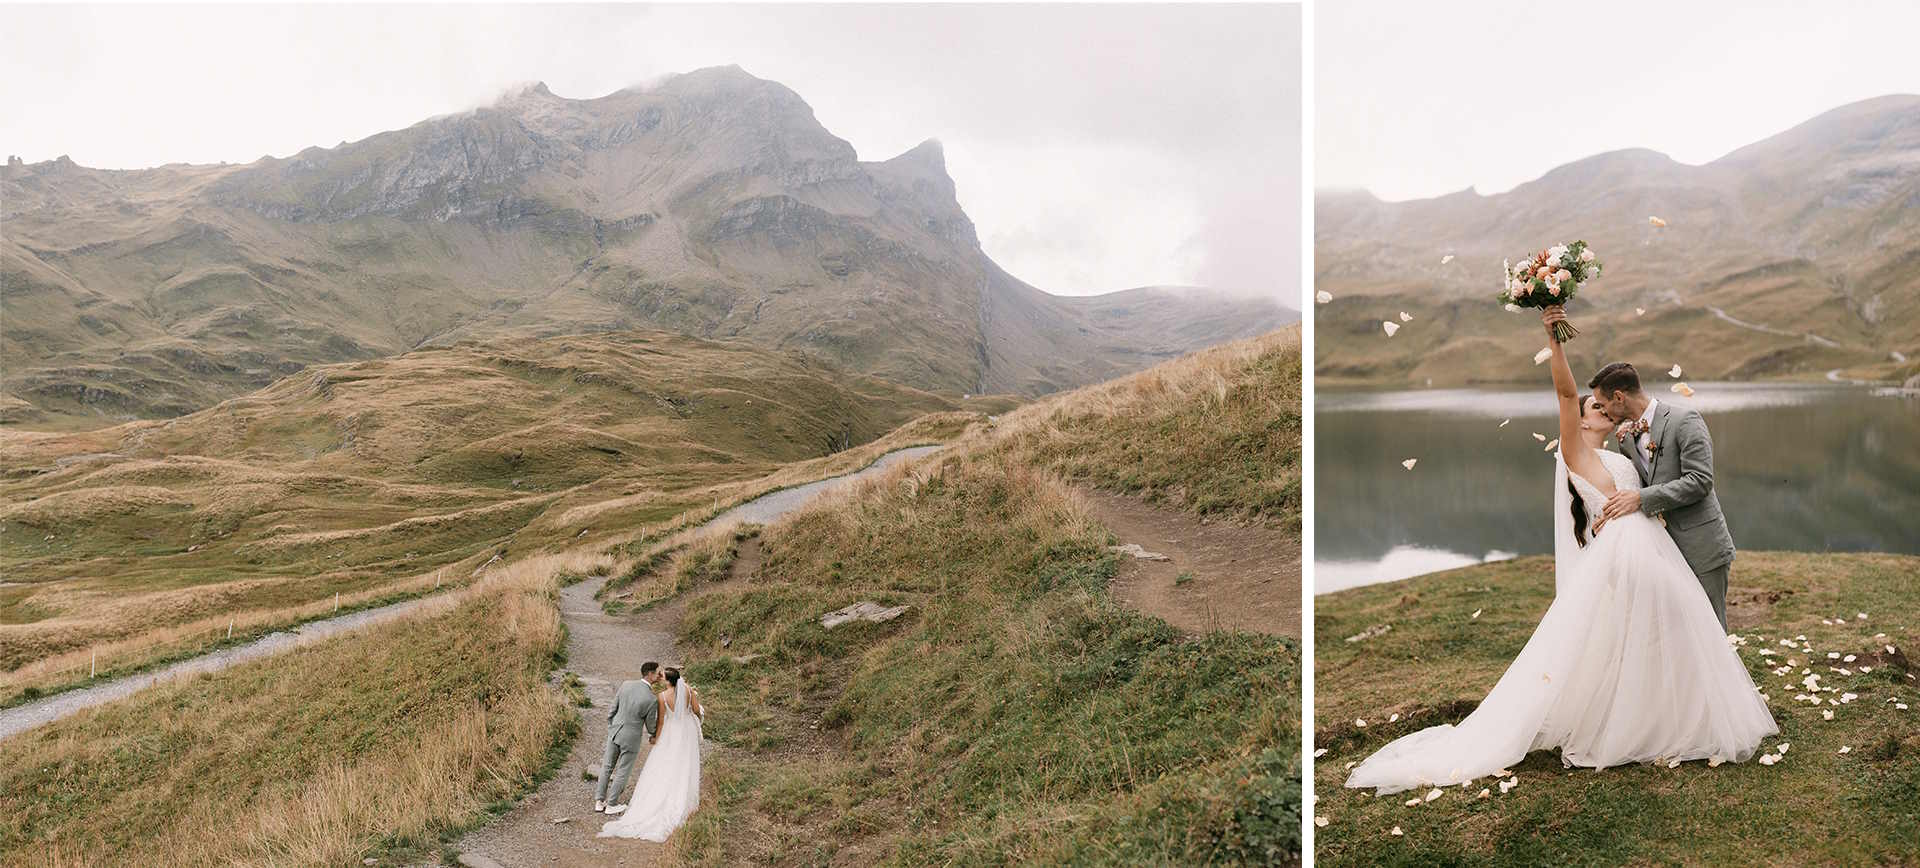 Swiss Alps Elopement Adventure Wedding